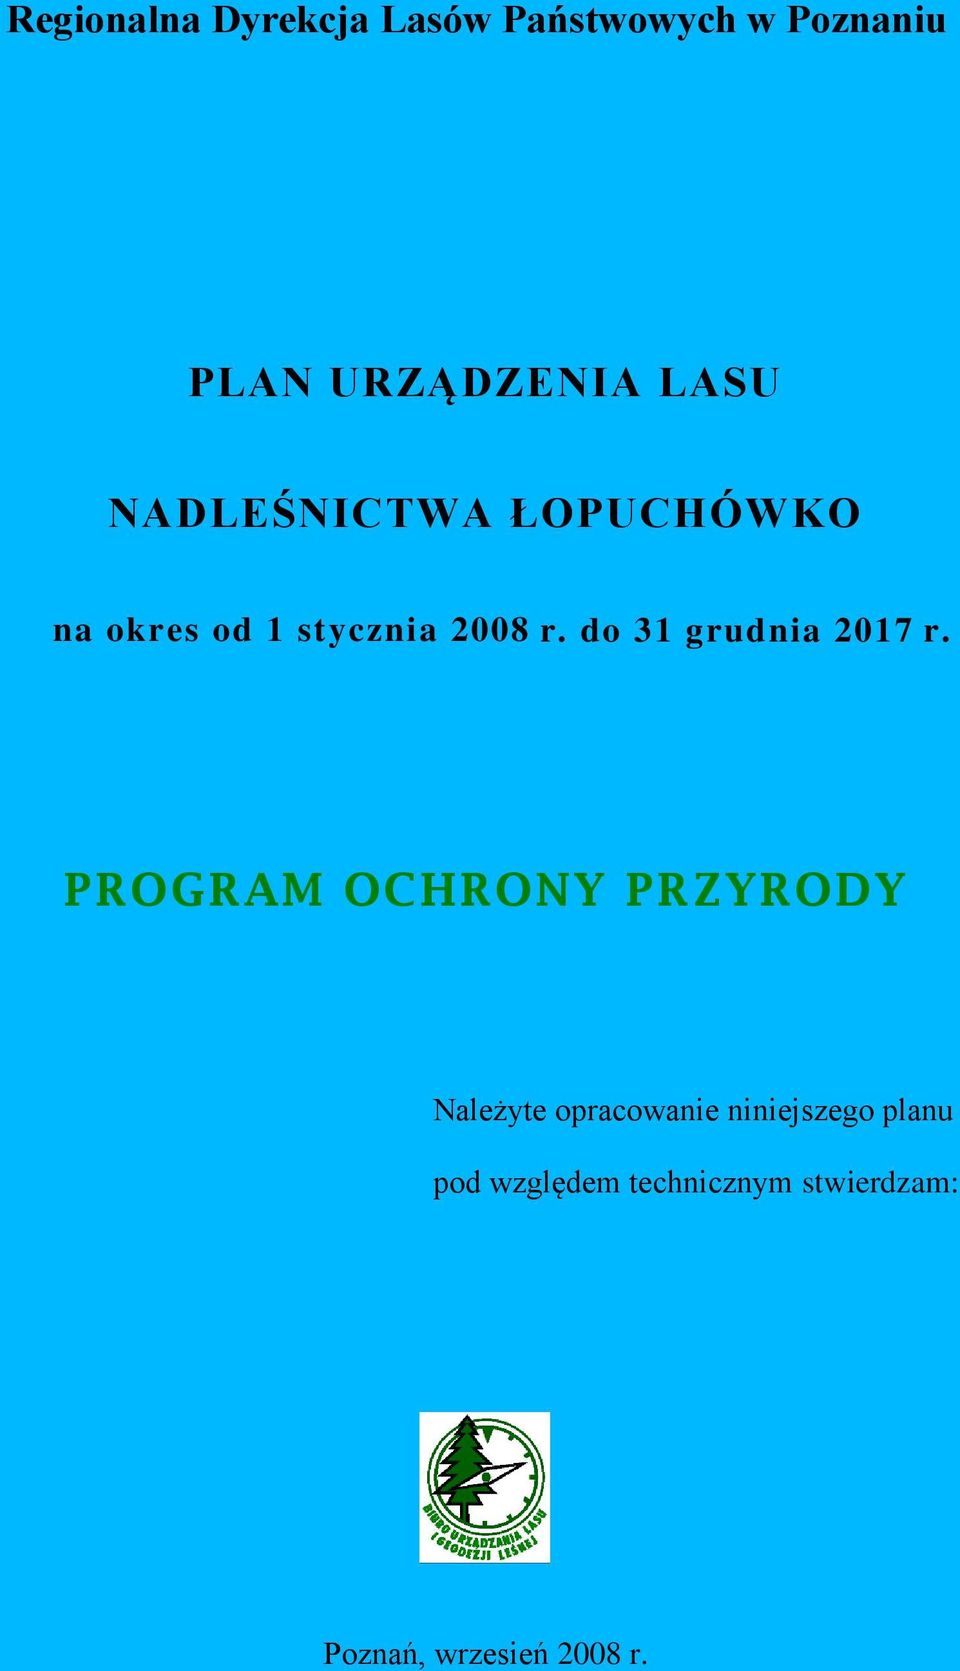 NADLEŚNICTWA ŁOPUCHÓWKO na okres od 1 stycznia 2008 r. do 31 grudnia 2017 r.